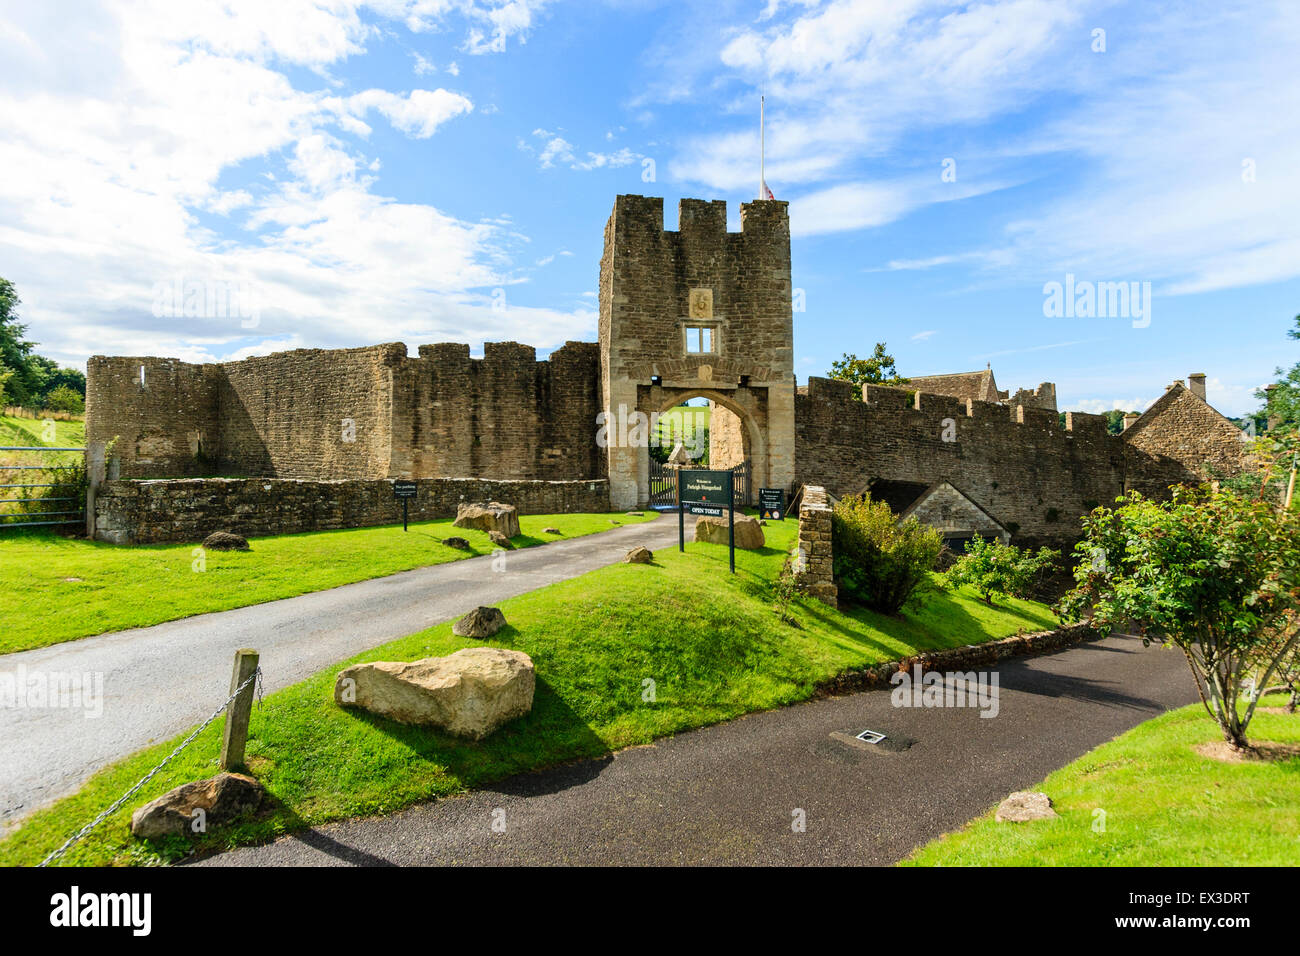 Die Ruinen von Farleigh Hungerford Castle. Das 14. Jahrhundert Osten Torhaus, der Haupteingang zum Schloss mit der äußeren Ringmauer und blauer Himmel. Stockfoto